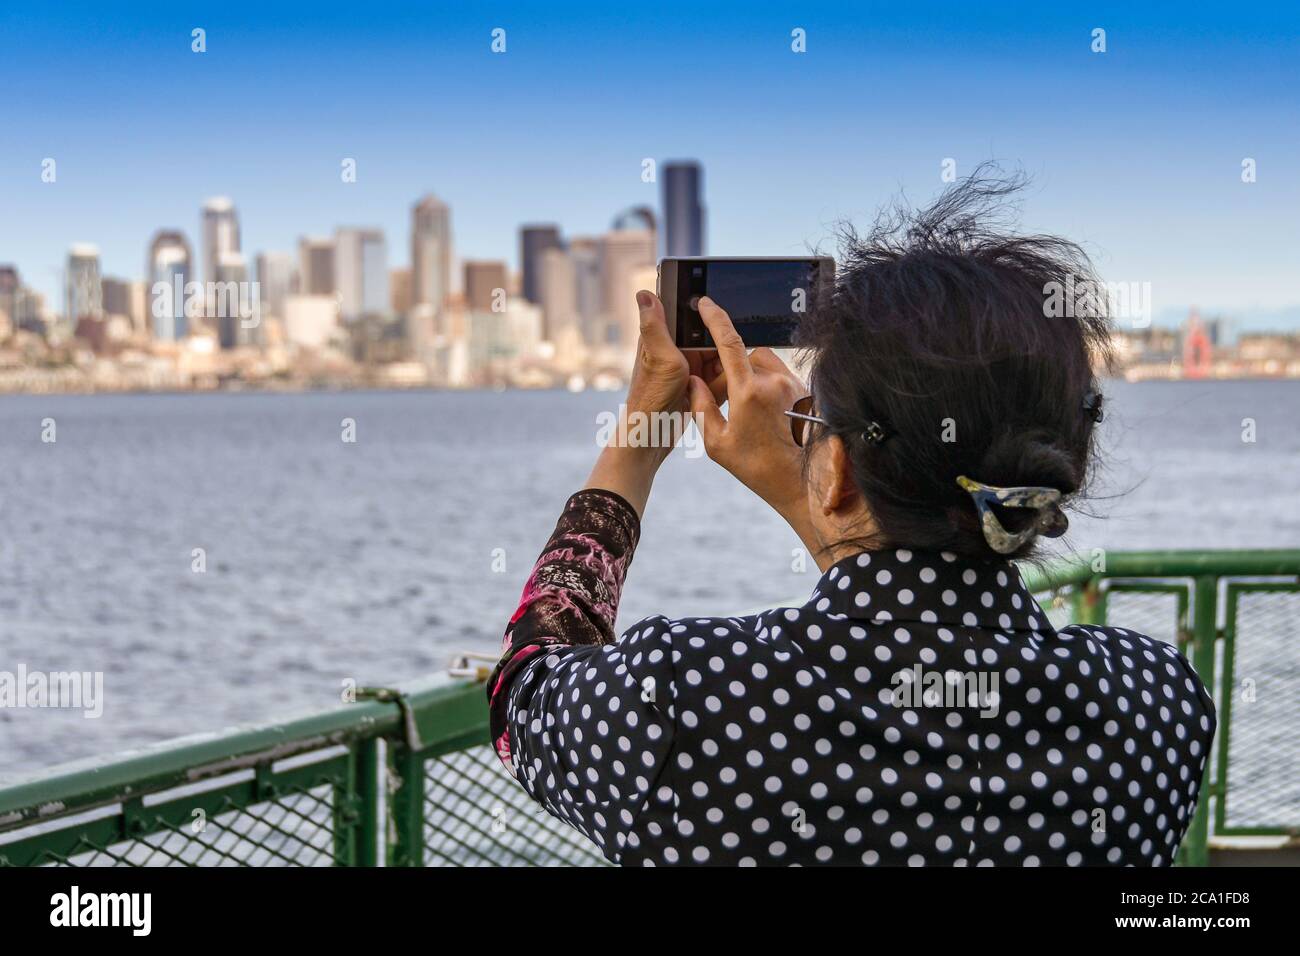 SEATTLE, STATO DI WASHINGTON, USA - GIUGNO 2018: Persona che scattano una foto dello skyline della città su un telefono con fotocamera, dal ponte di un traghetto passeggeri. Foto Stock